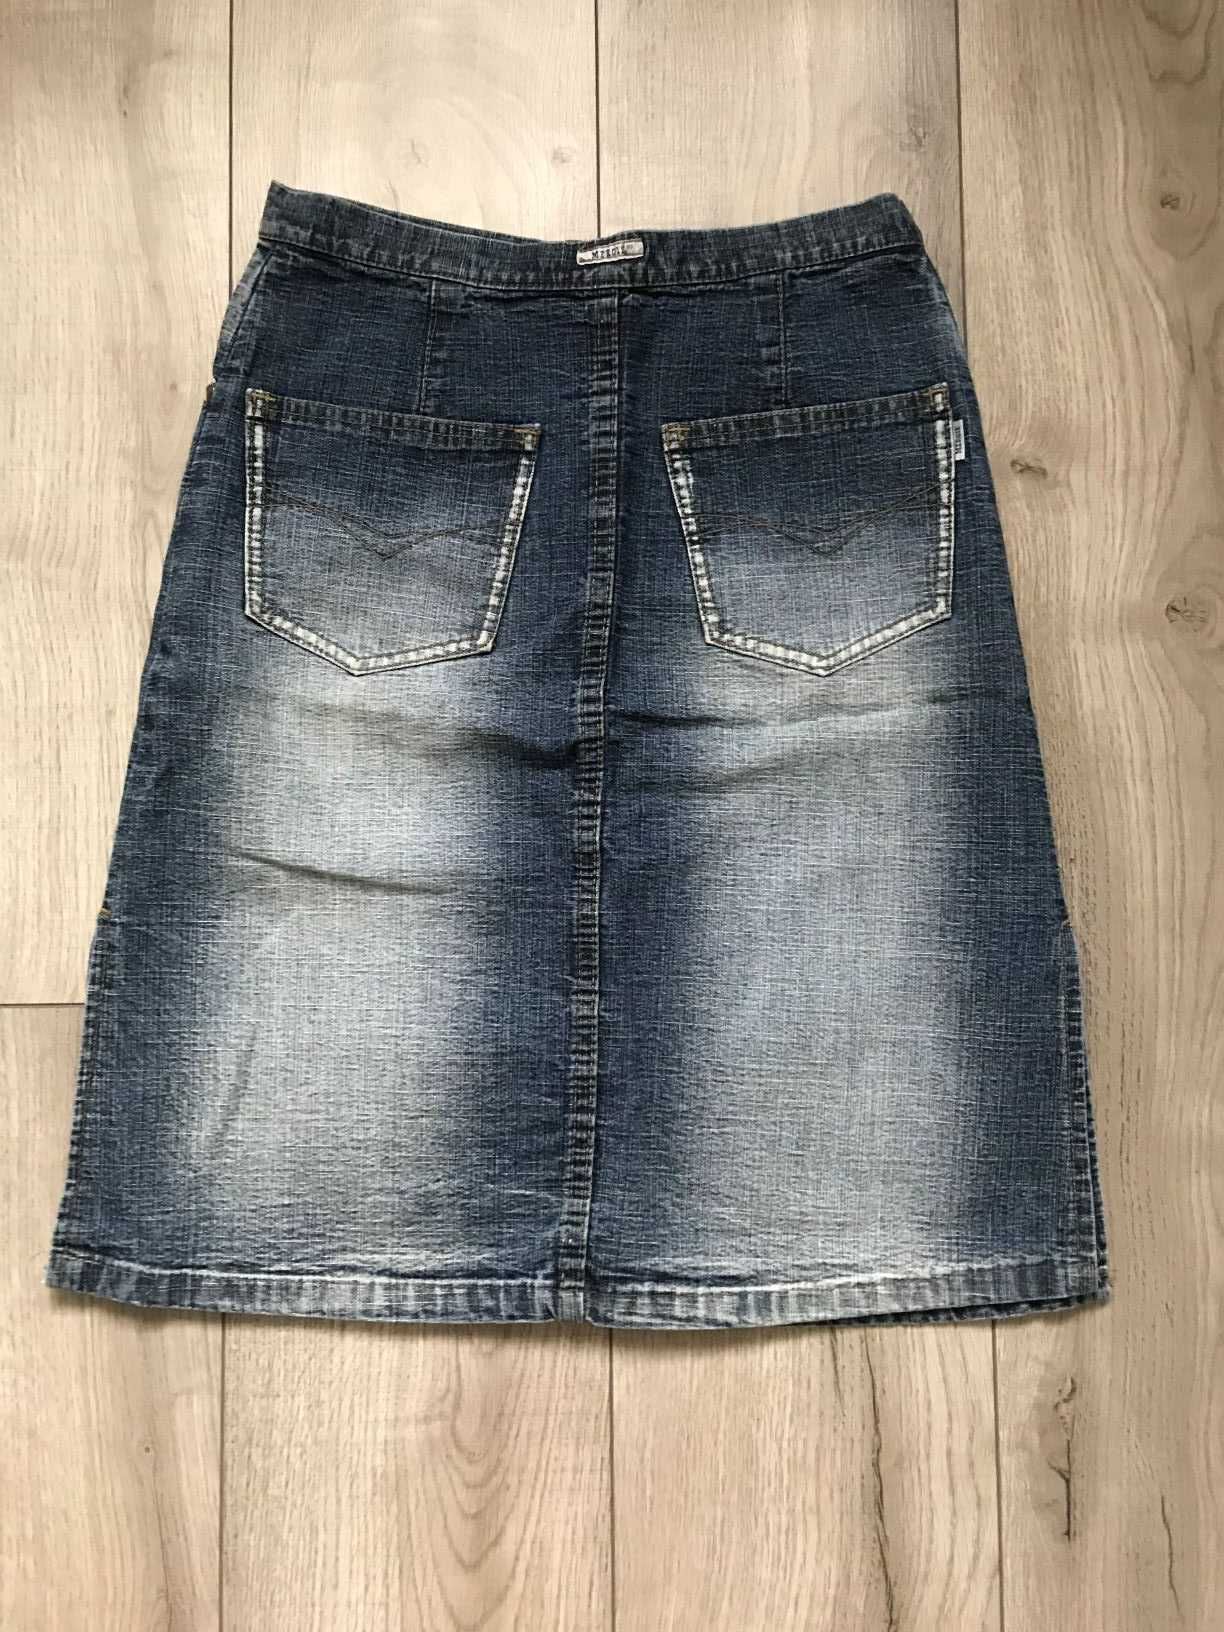 spódnica jeansowa rozmiar S/M polecam